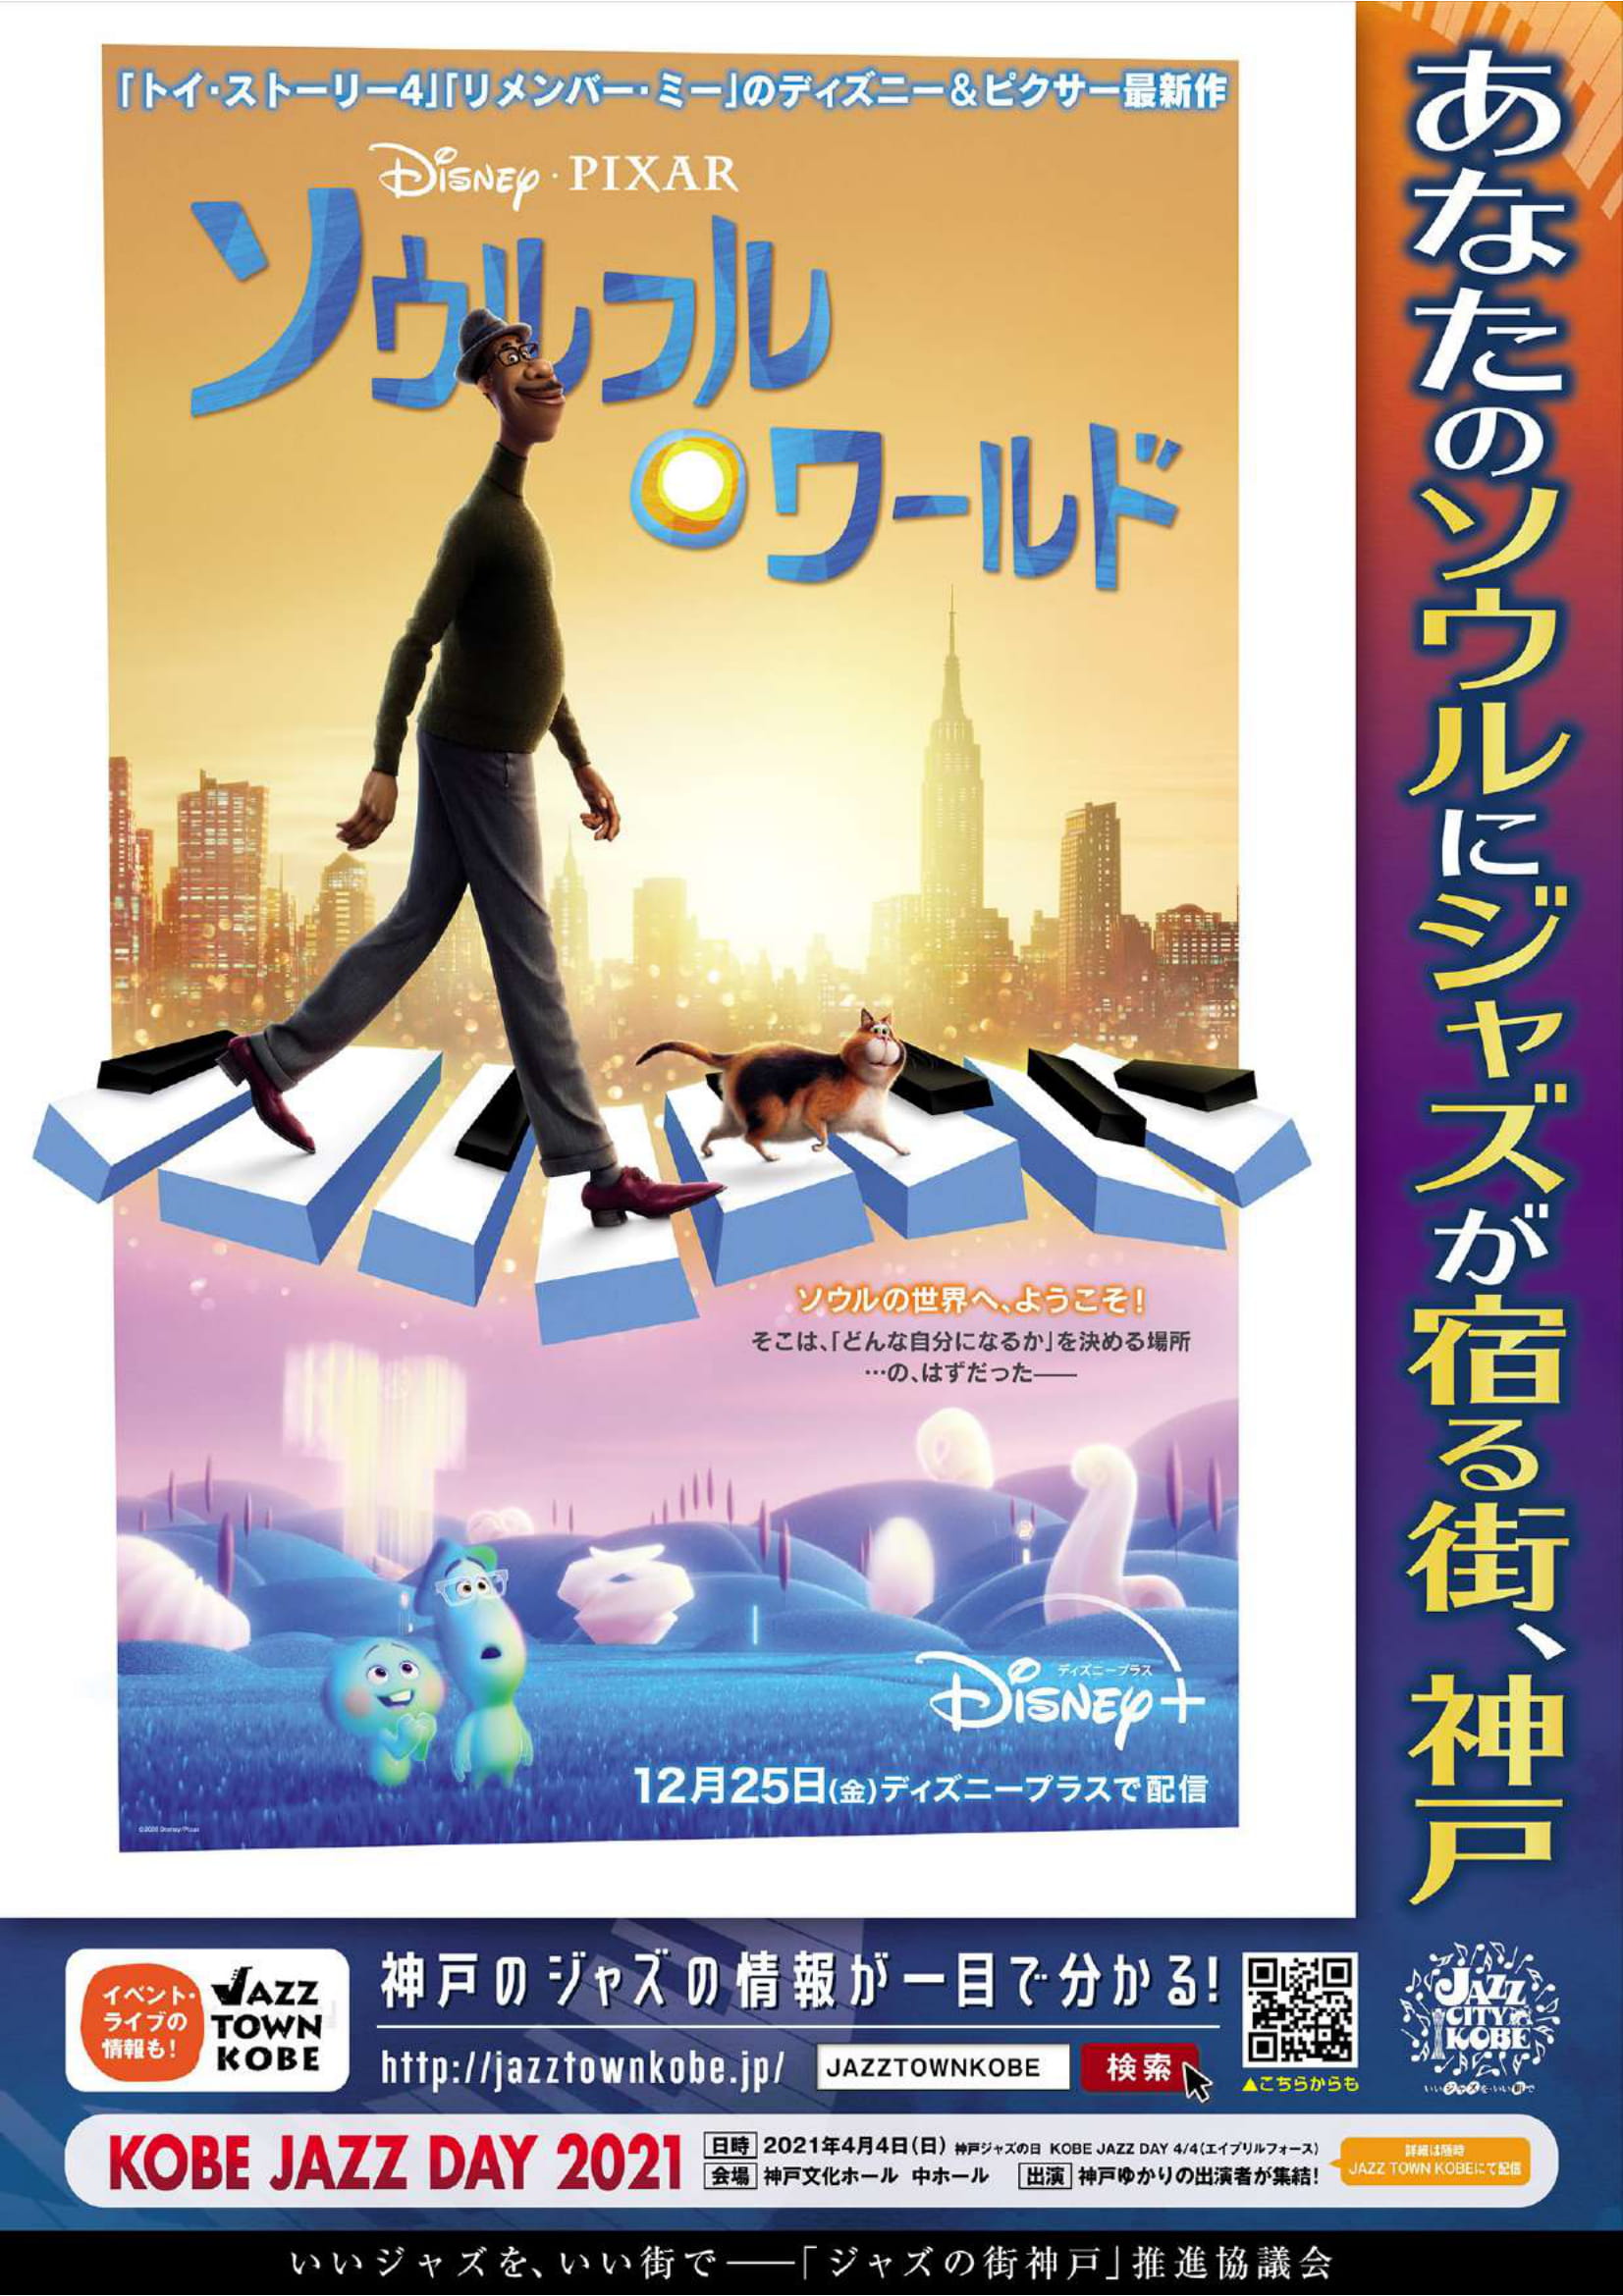 神戸市広報 神戸 ソウルフルワールド ディズニー ピクサー最新作 ソウルフル ワールド は ジャズ ミュージシャンを夢見る主人公ジョーの物語 ジャズの街神戸 とのprポスターを作成しました ストリートピアノ周辺など約300カ所で掲示 映画